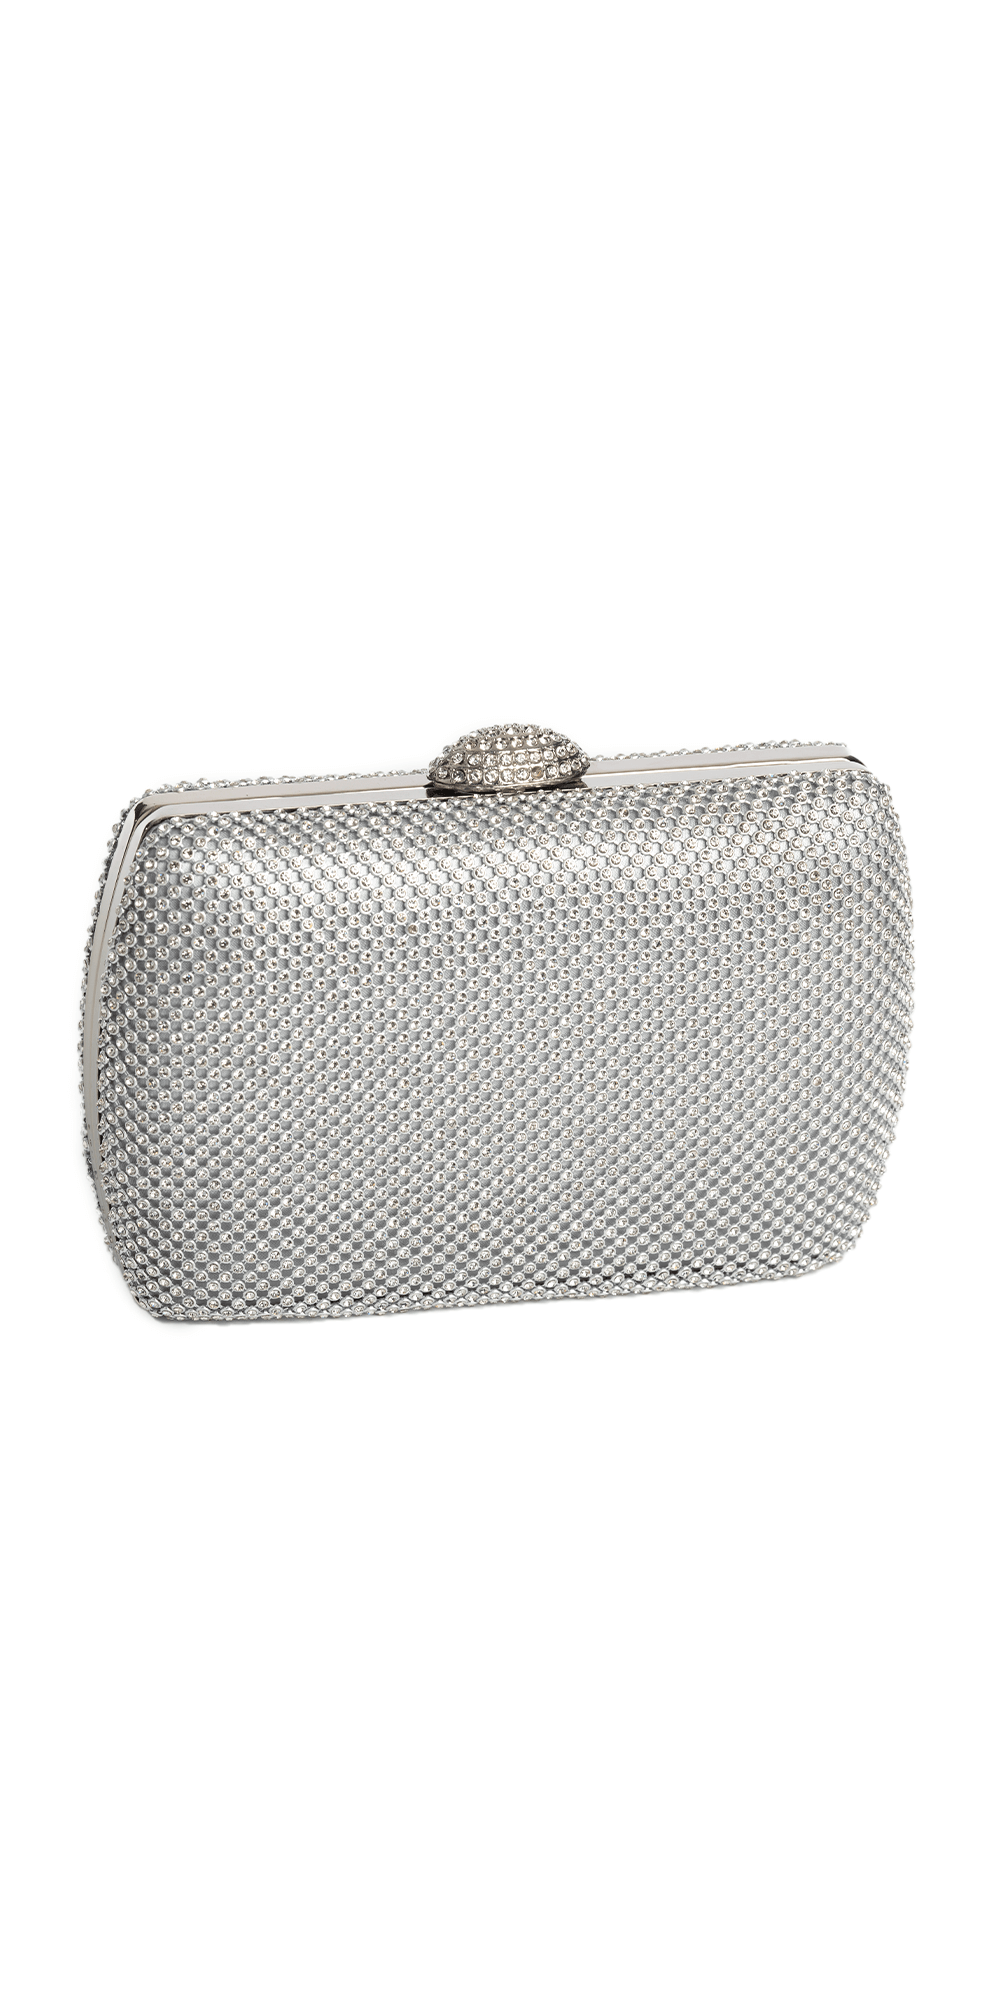 Camille La Vie Micro Stone Mesh Handbag with  Rhinestone Dome Closure OS / silver